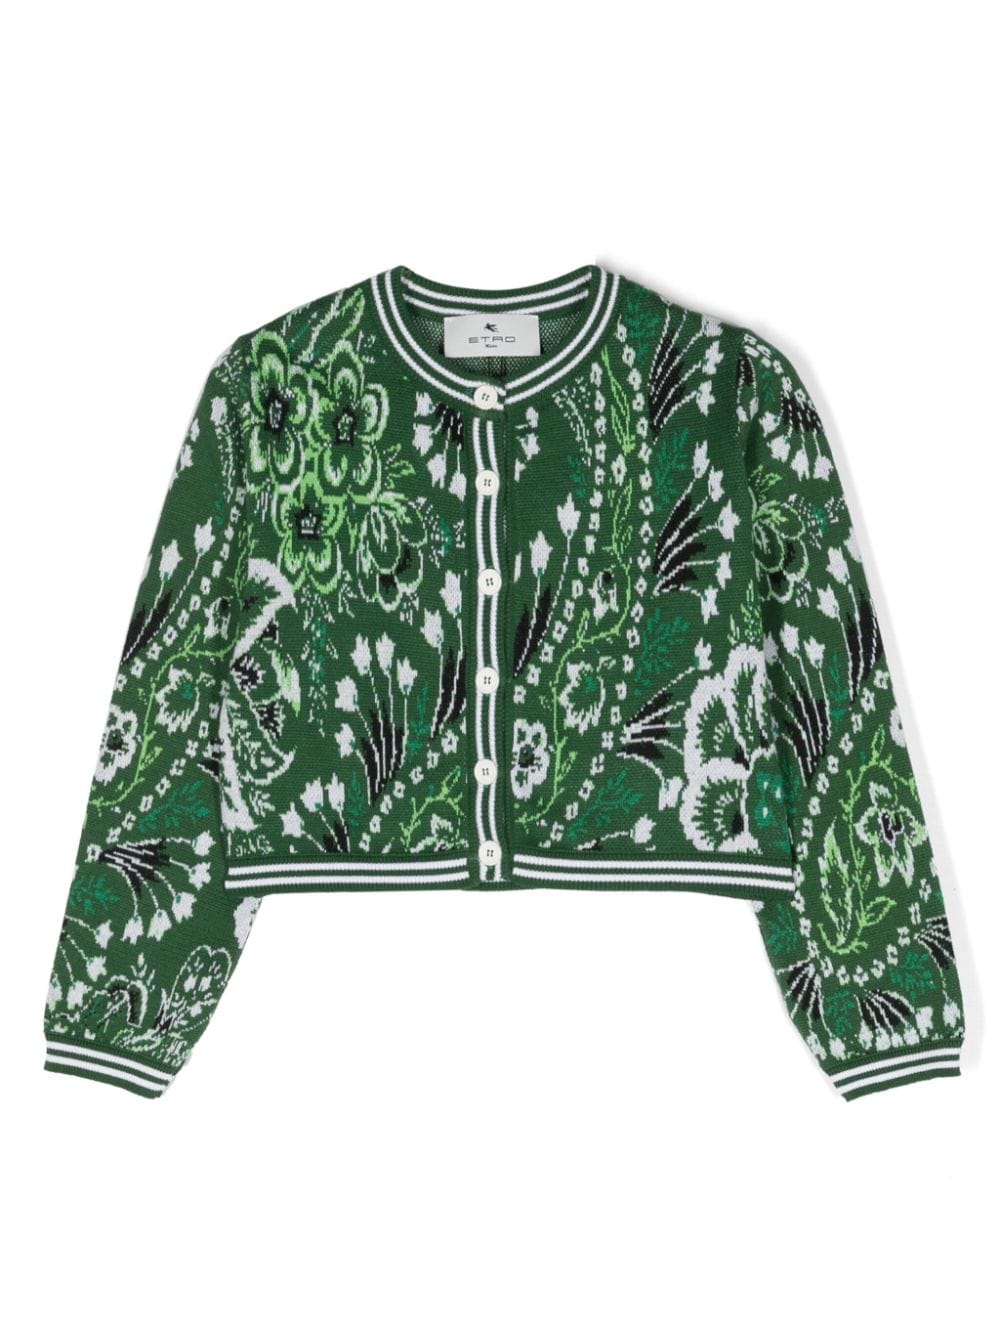 ETRO KIDS jacquard floral-motif cardigan - Green